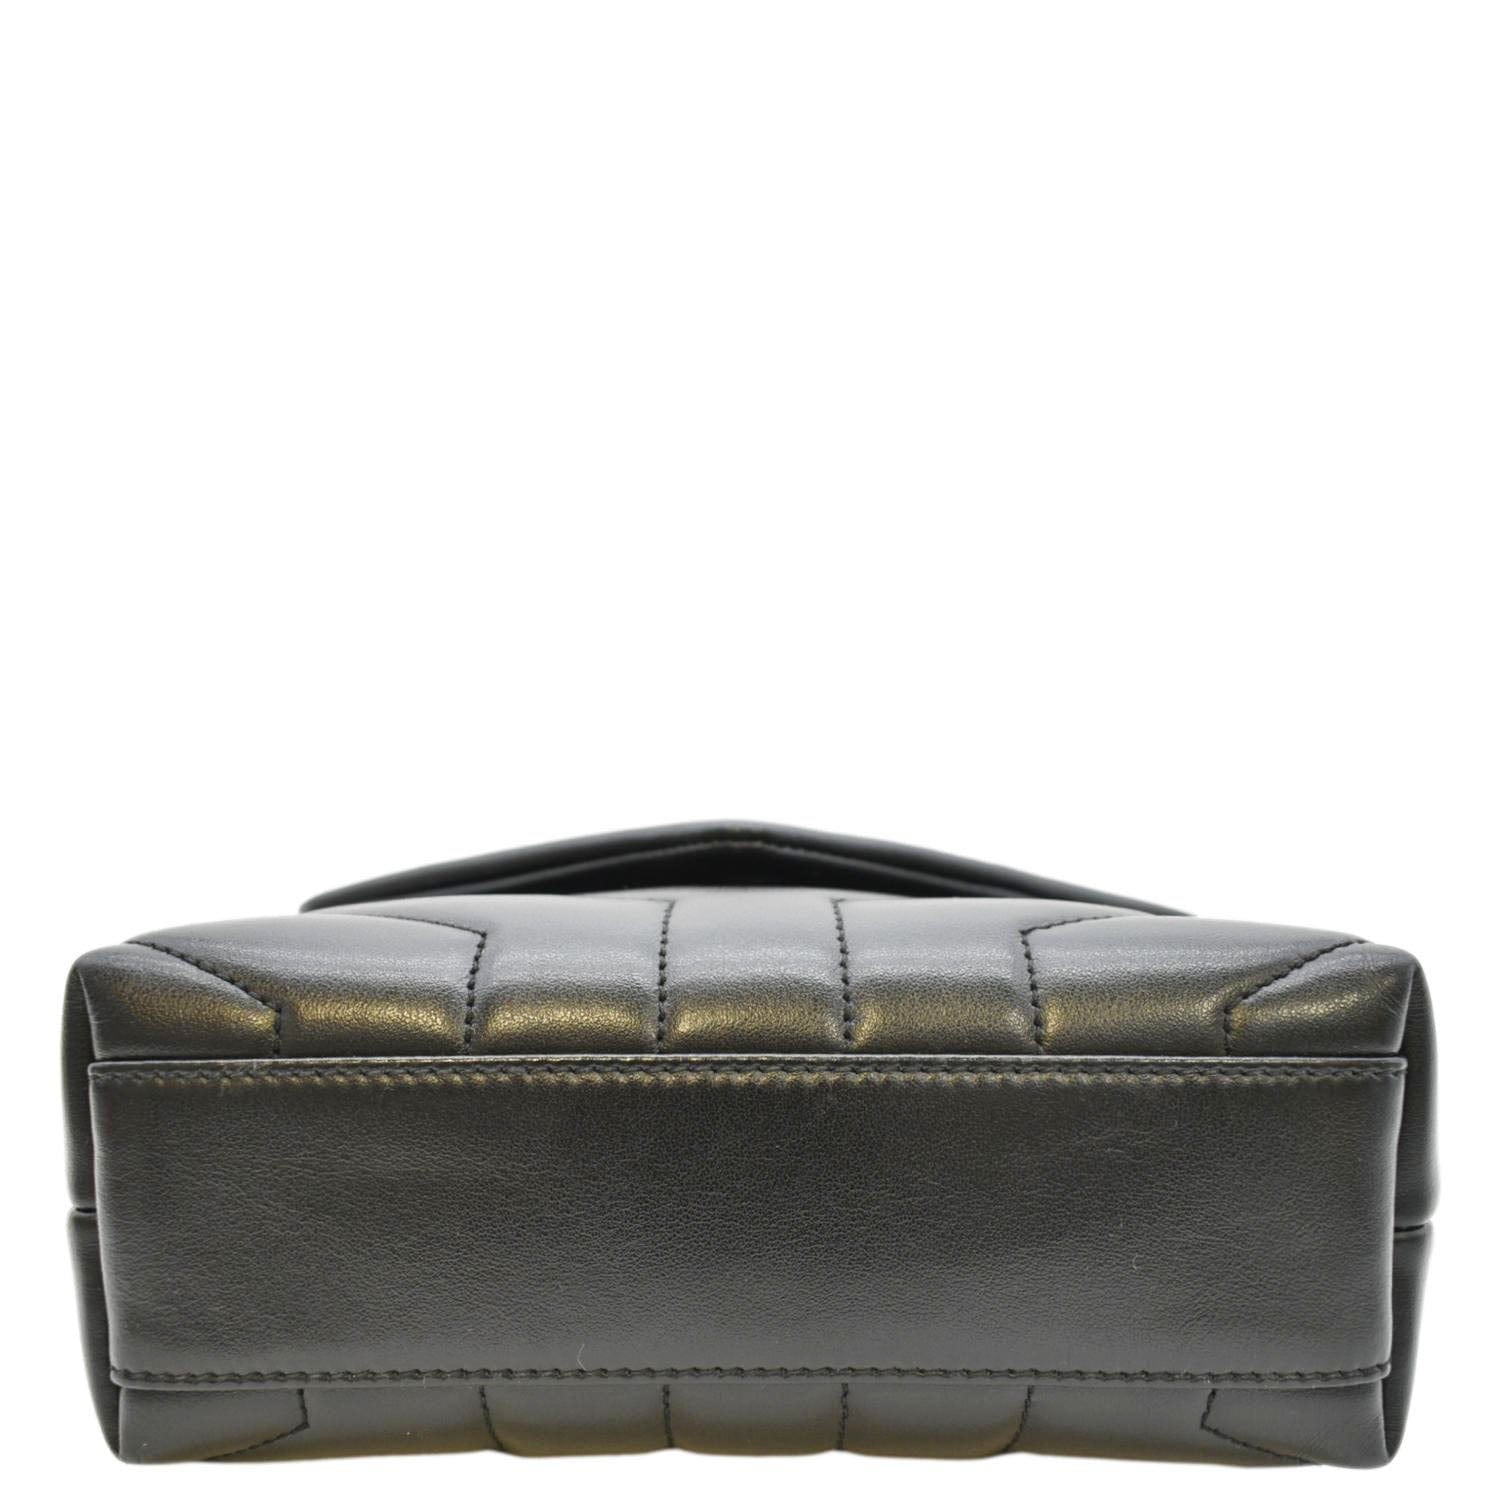 Saint Laurent Loulou Small leather shoulder bag - ShopStyle